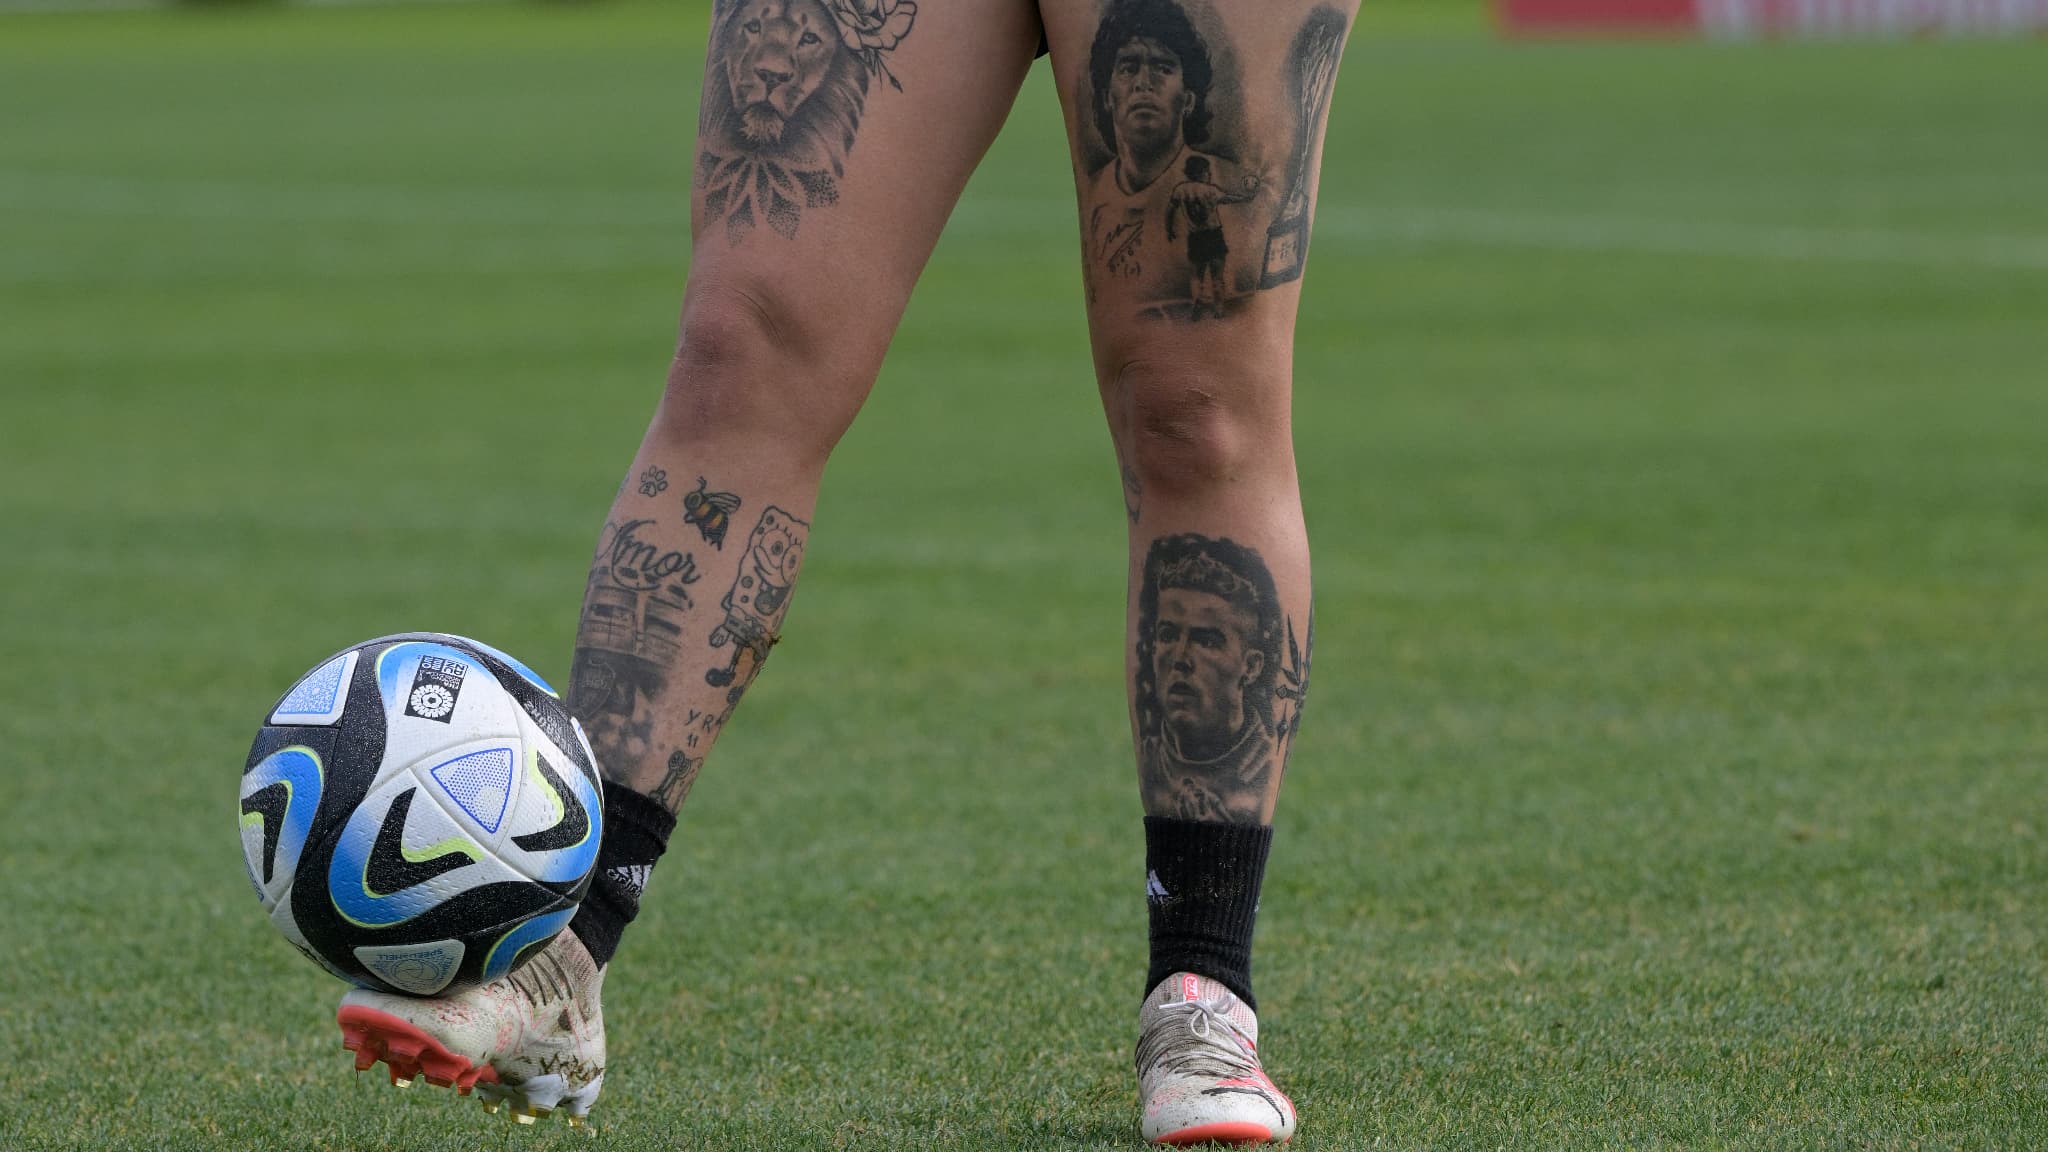 Jugador argentino en la mira por el tatuaje de Cristiano Ronaldo